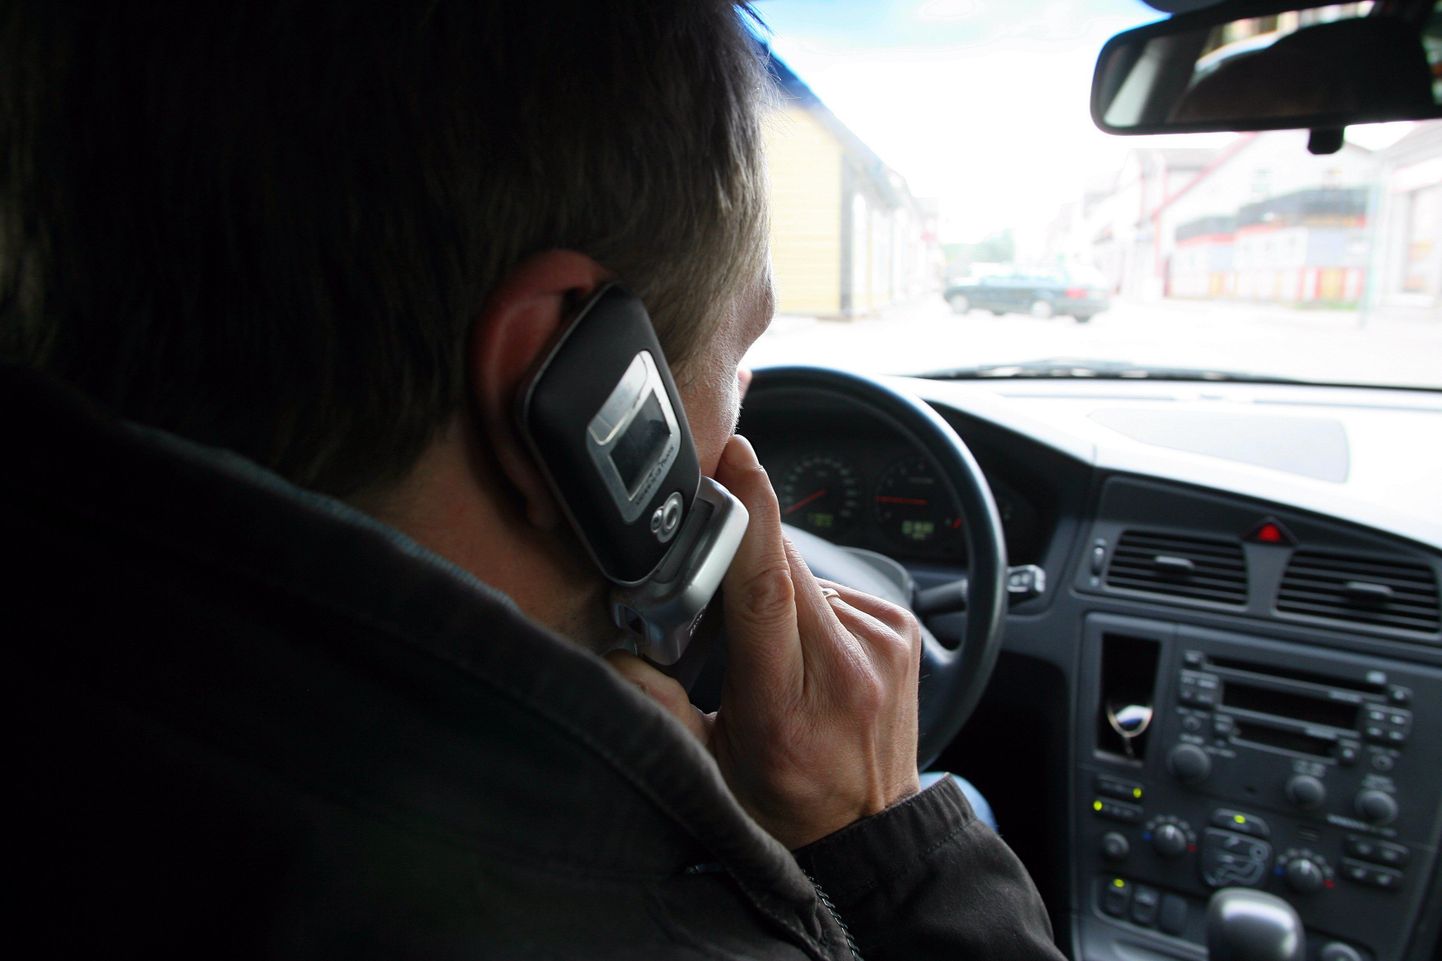 Liiklusseaduse järgi ei tohi autojuht kasutada telefoni sõidu ajal ilma käsi vabaks jätva vahendita.